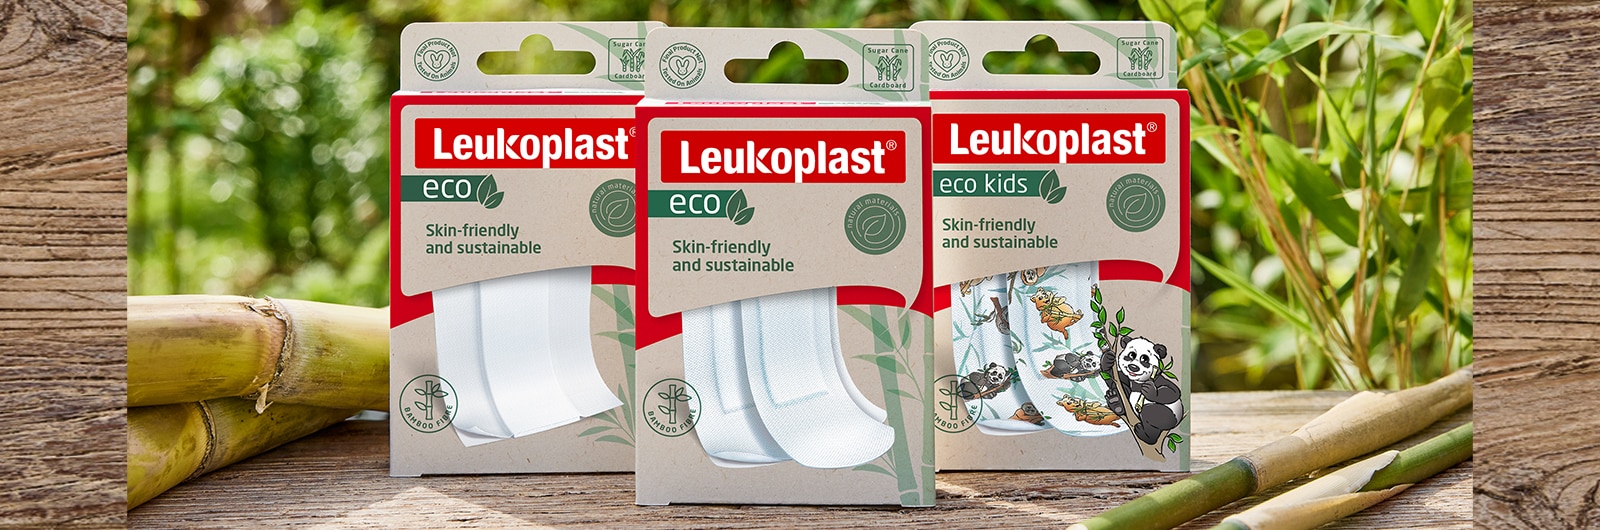 Kuvassa näkyvät Leukoplast eco -pakkaukset: leikattava, lajitelma ja lasten versio